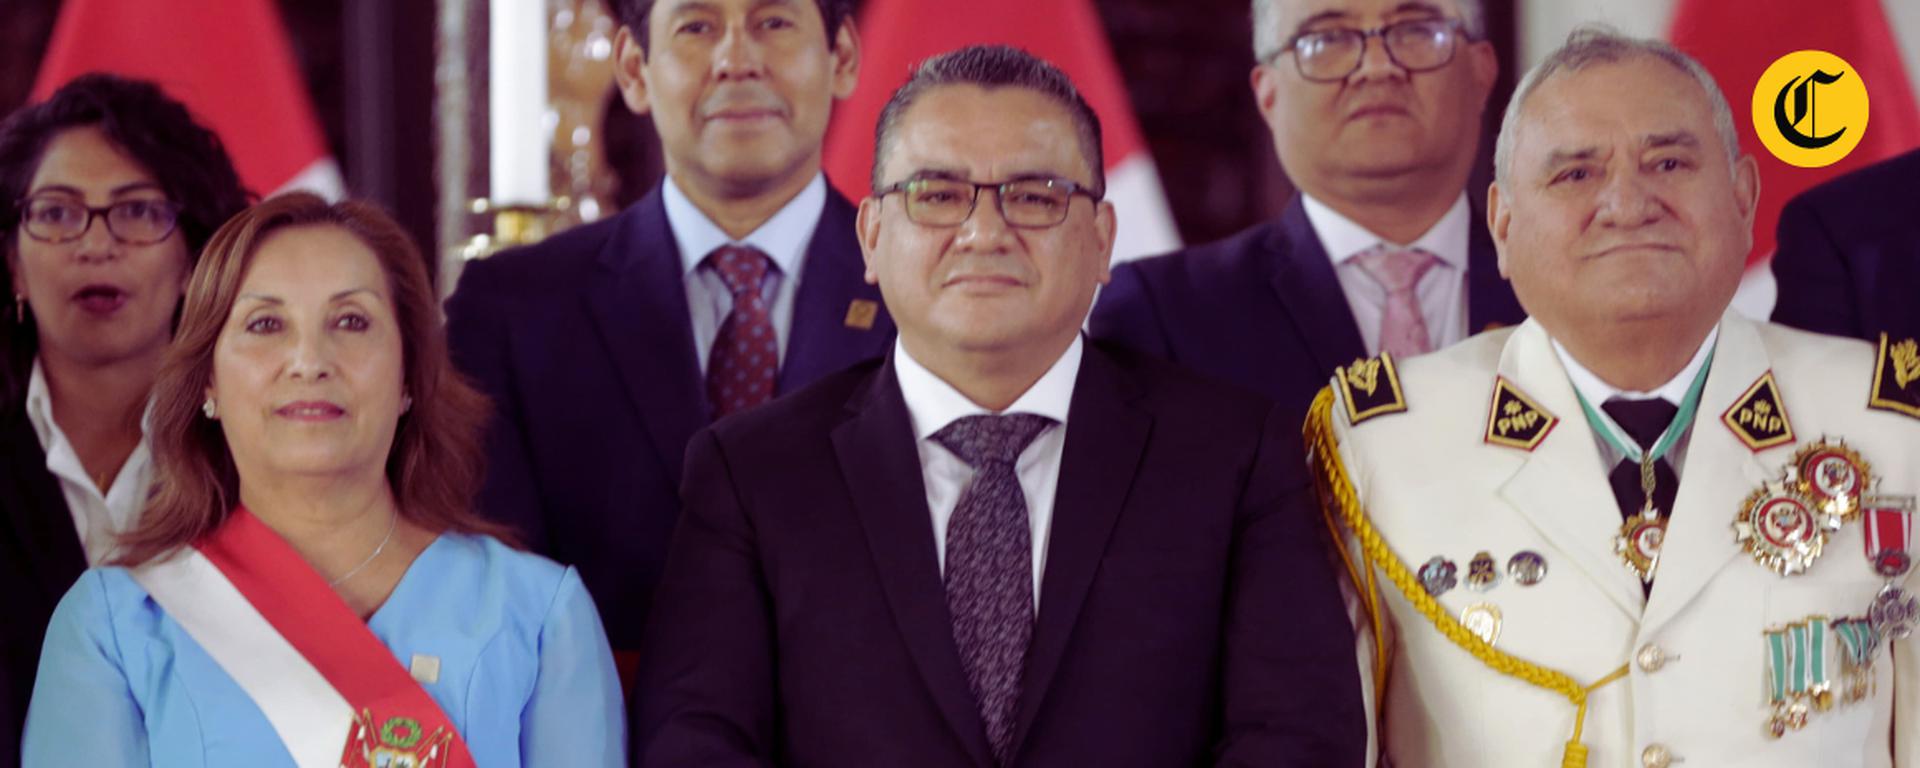 Juan José Santiváñez es el sexto ministro del Interior de este gobierno: ¿Cuál es el impacto de la alta rotación en esa cartera?